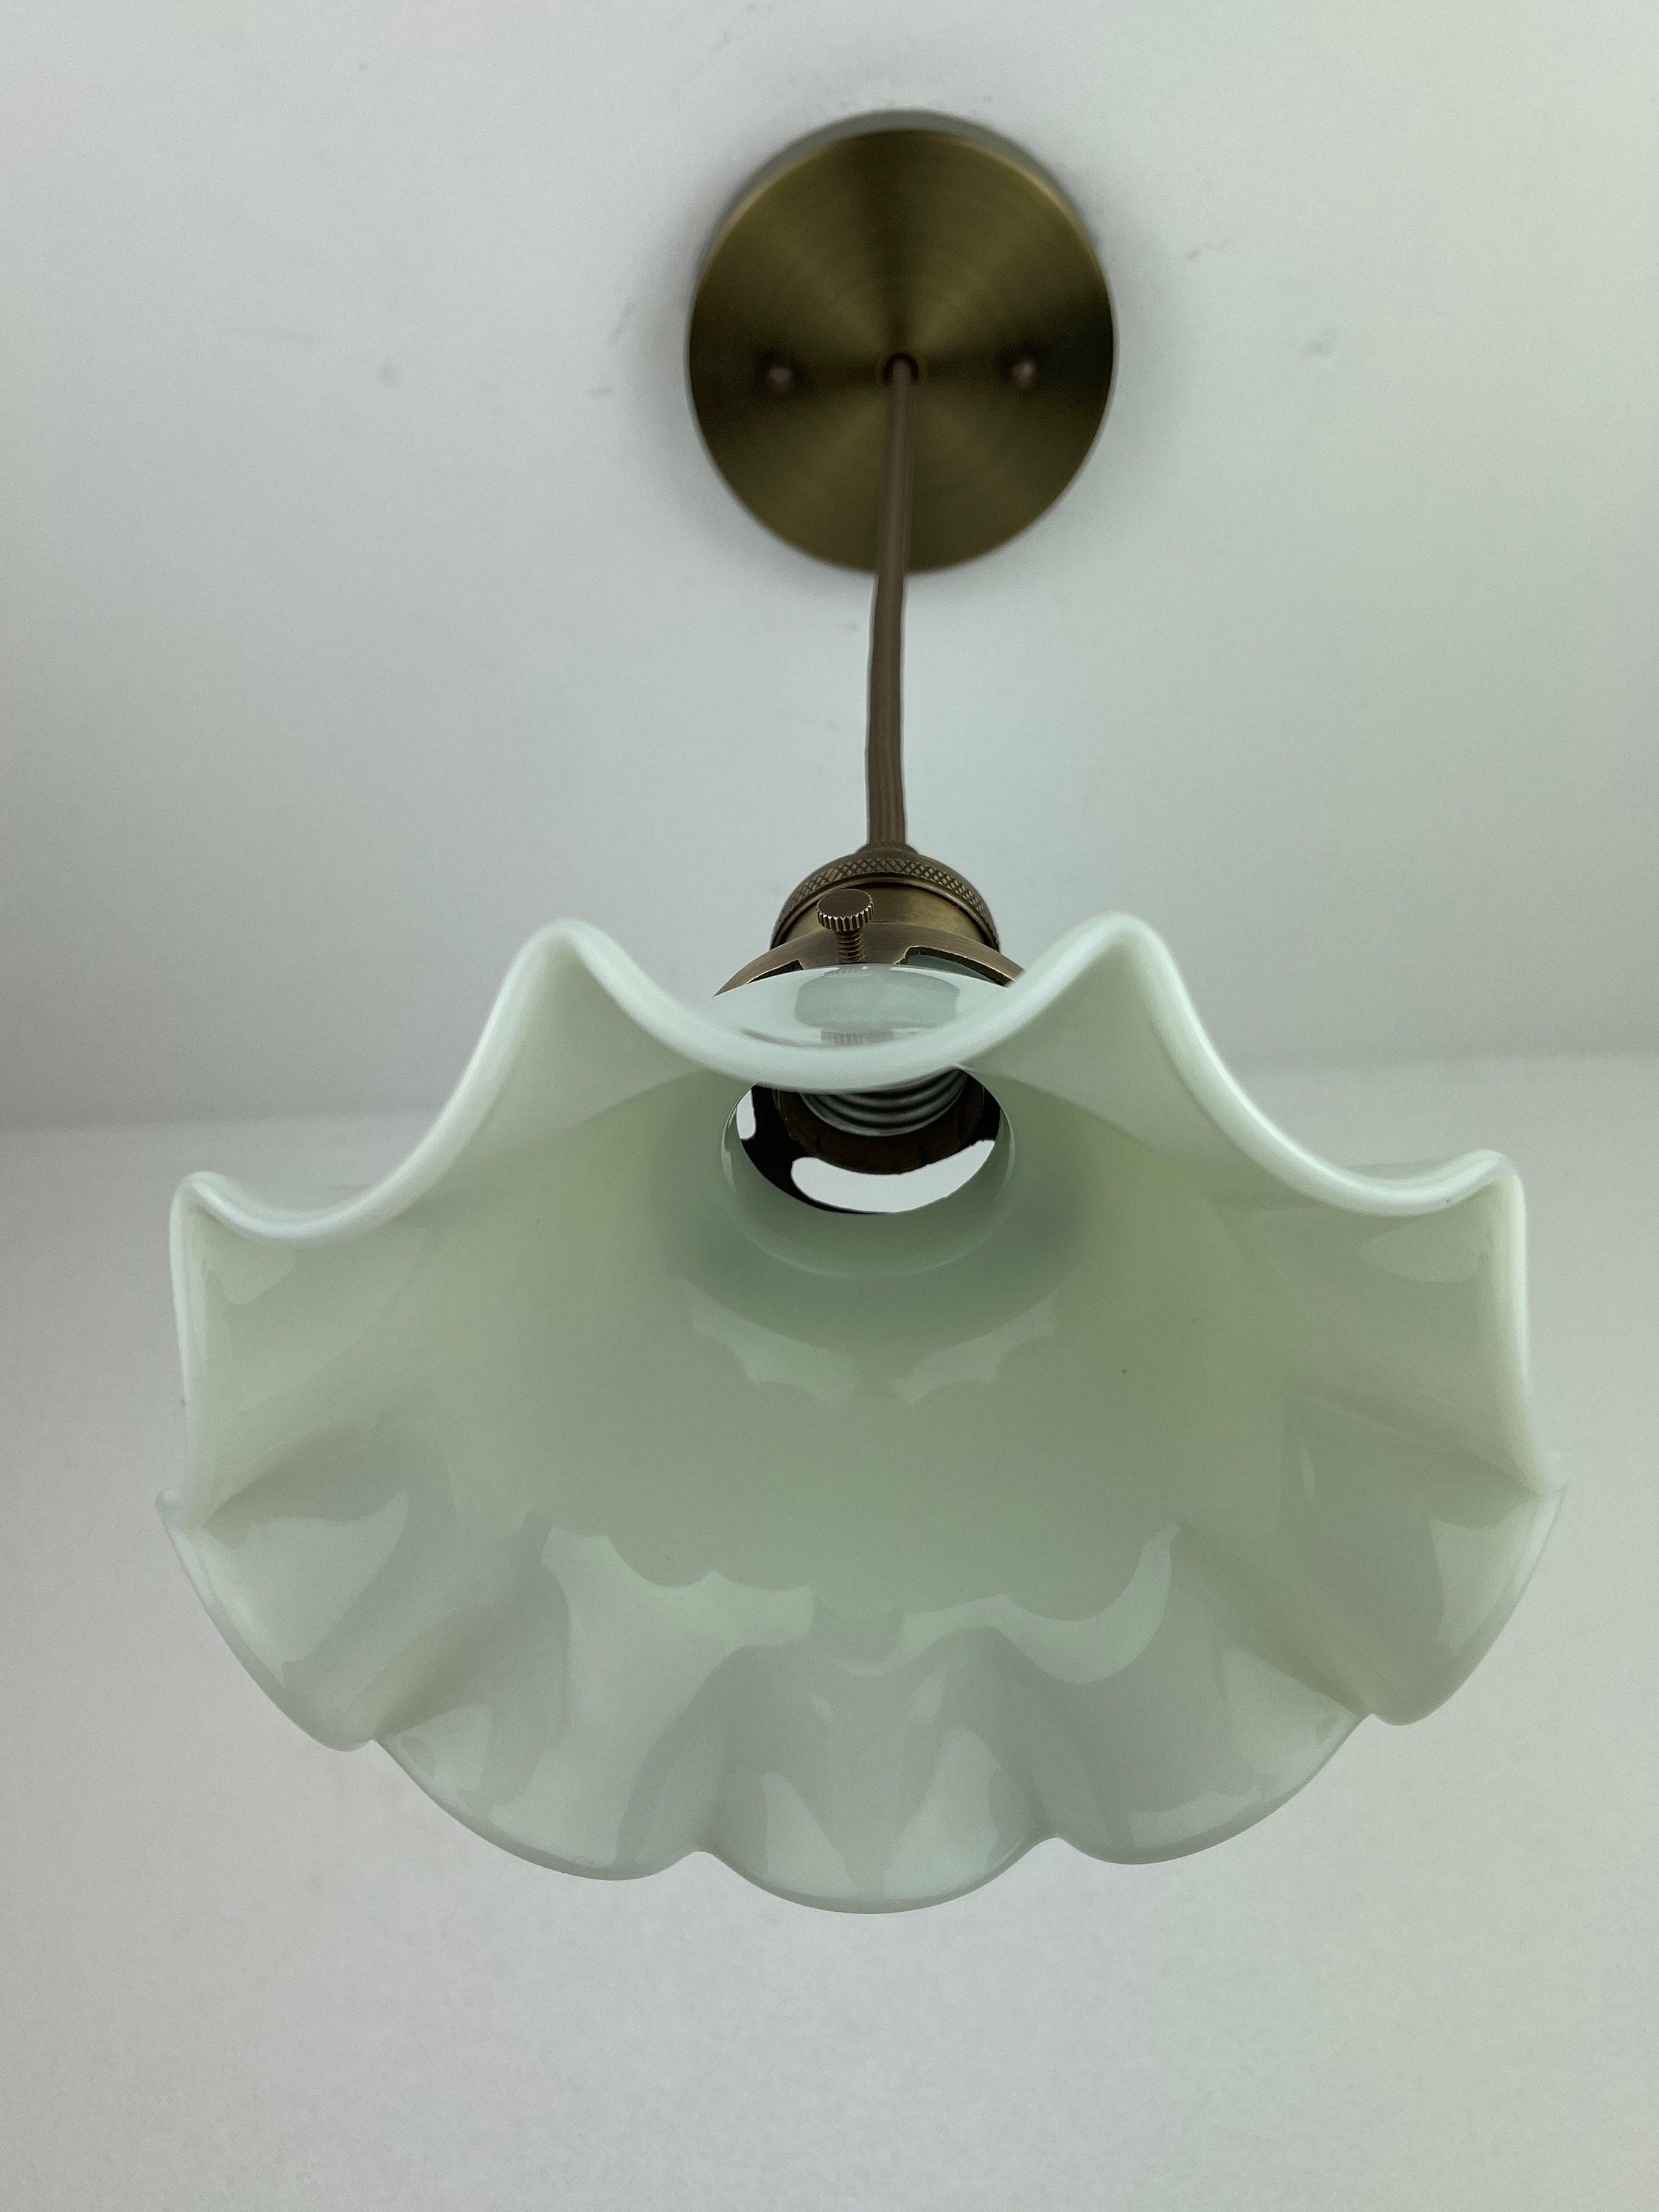 Antique 1920's Ruffled Petticoat Petite Milk Glass Pendant Light with 6 1/4